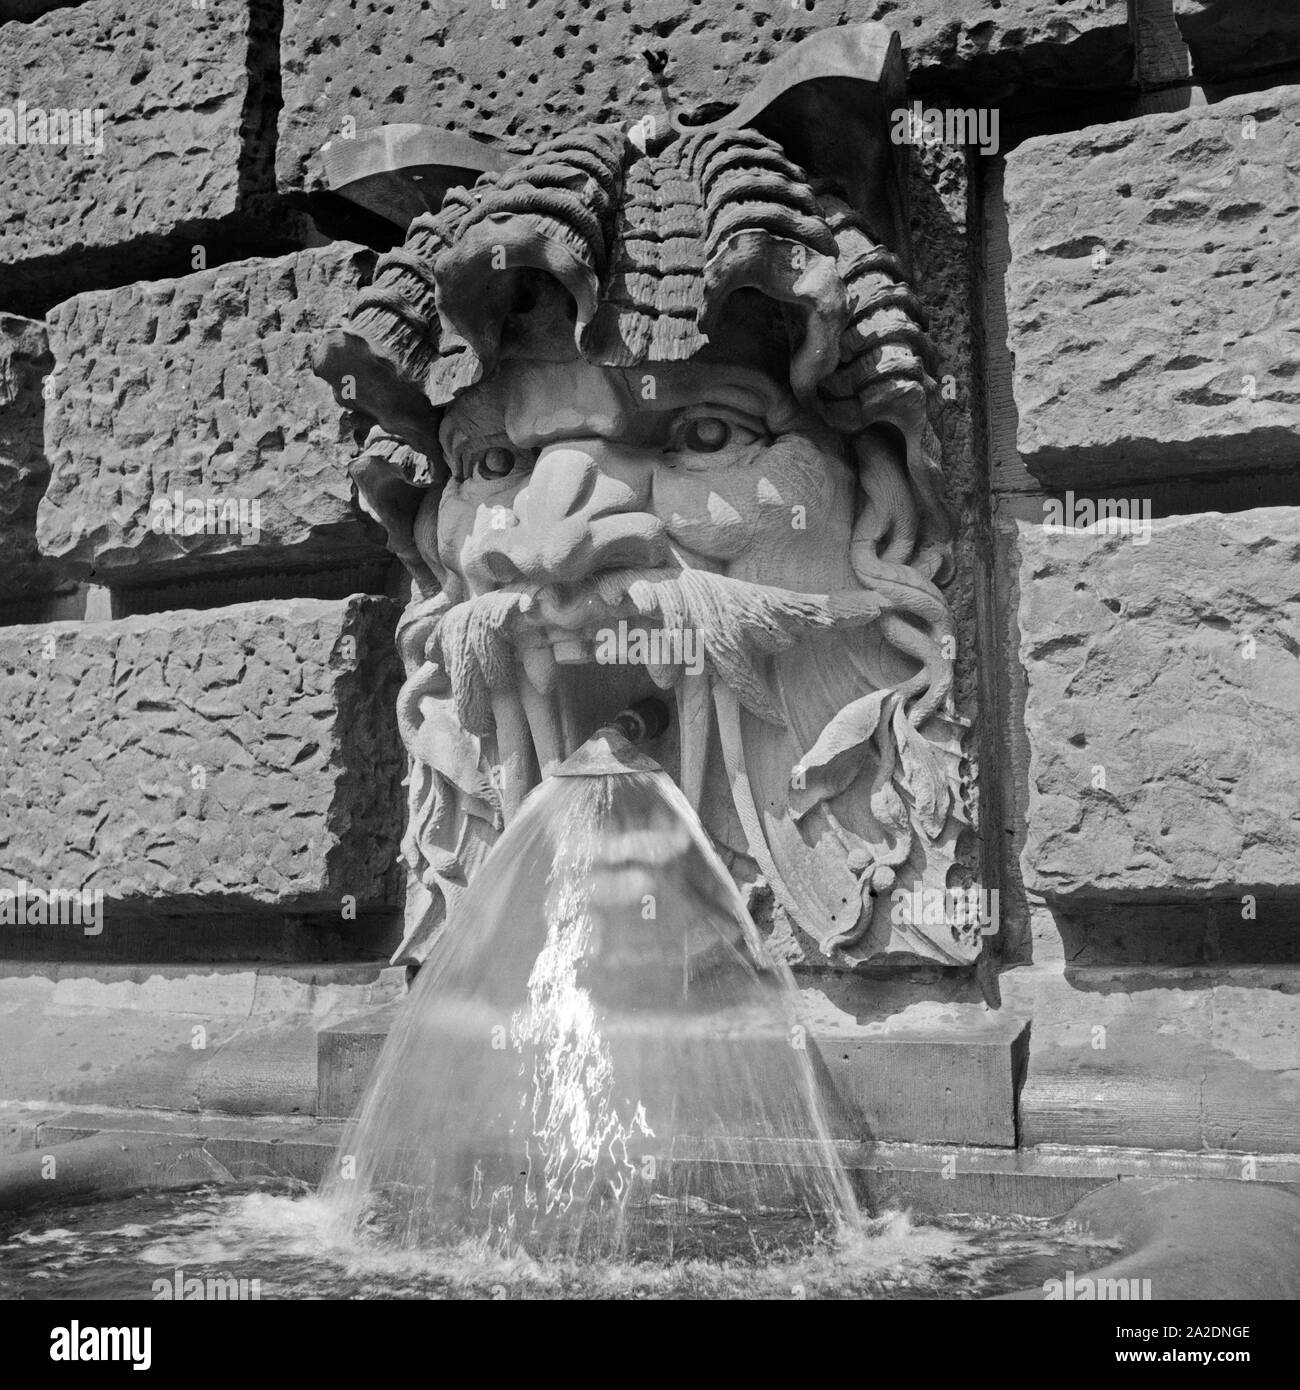 Wasserspeier speist ein einen Brunnen dans Gebäudewand von Deutschland, 1930er Jahre. Un spenidng gargouille de l'eau pour un printemps, Allemagne 1930. Banque D'Images